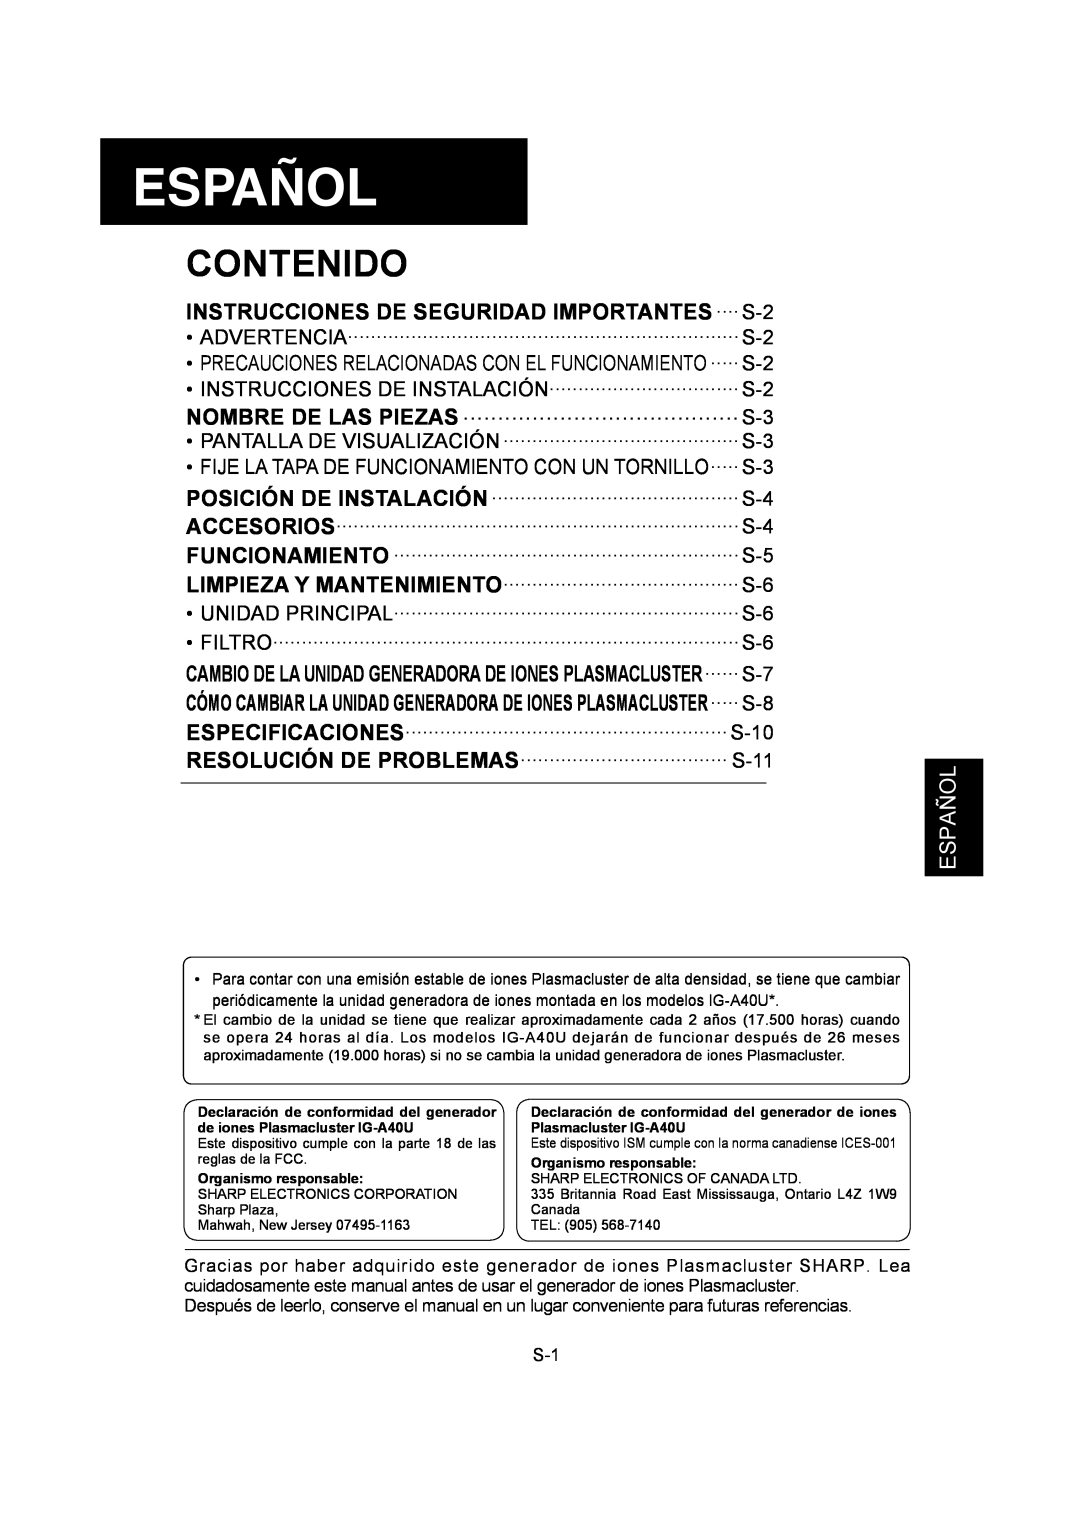 Sharp IG-A40U operation manual Español, Contenido 